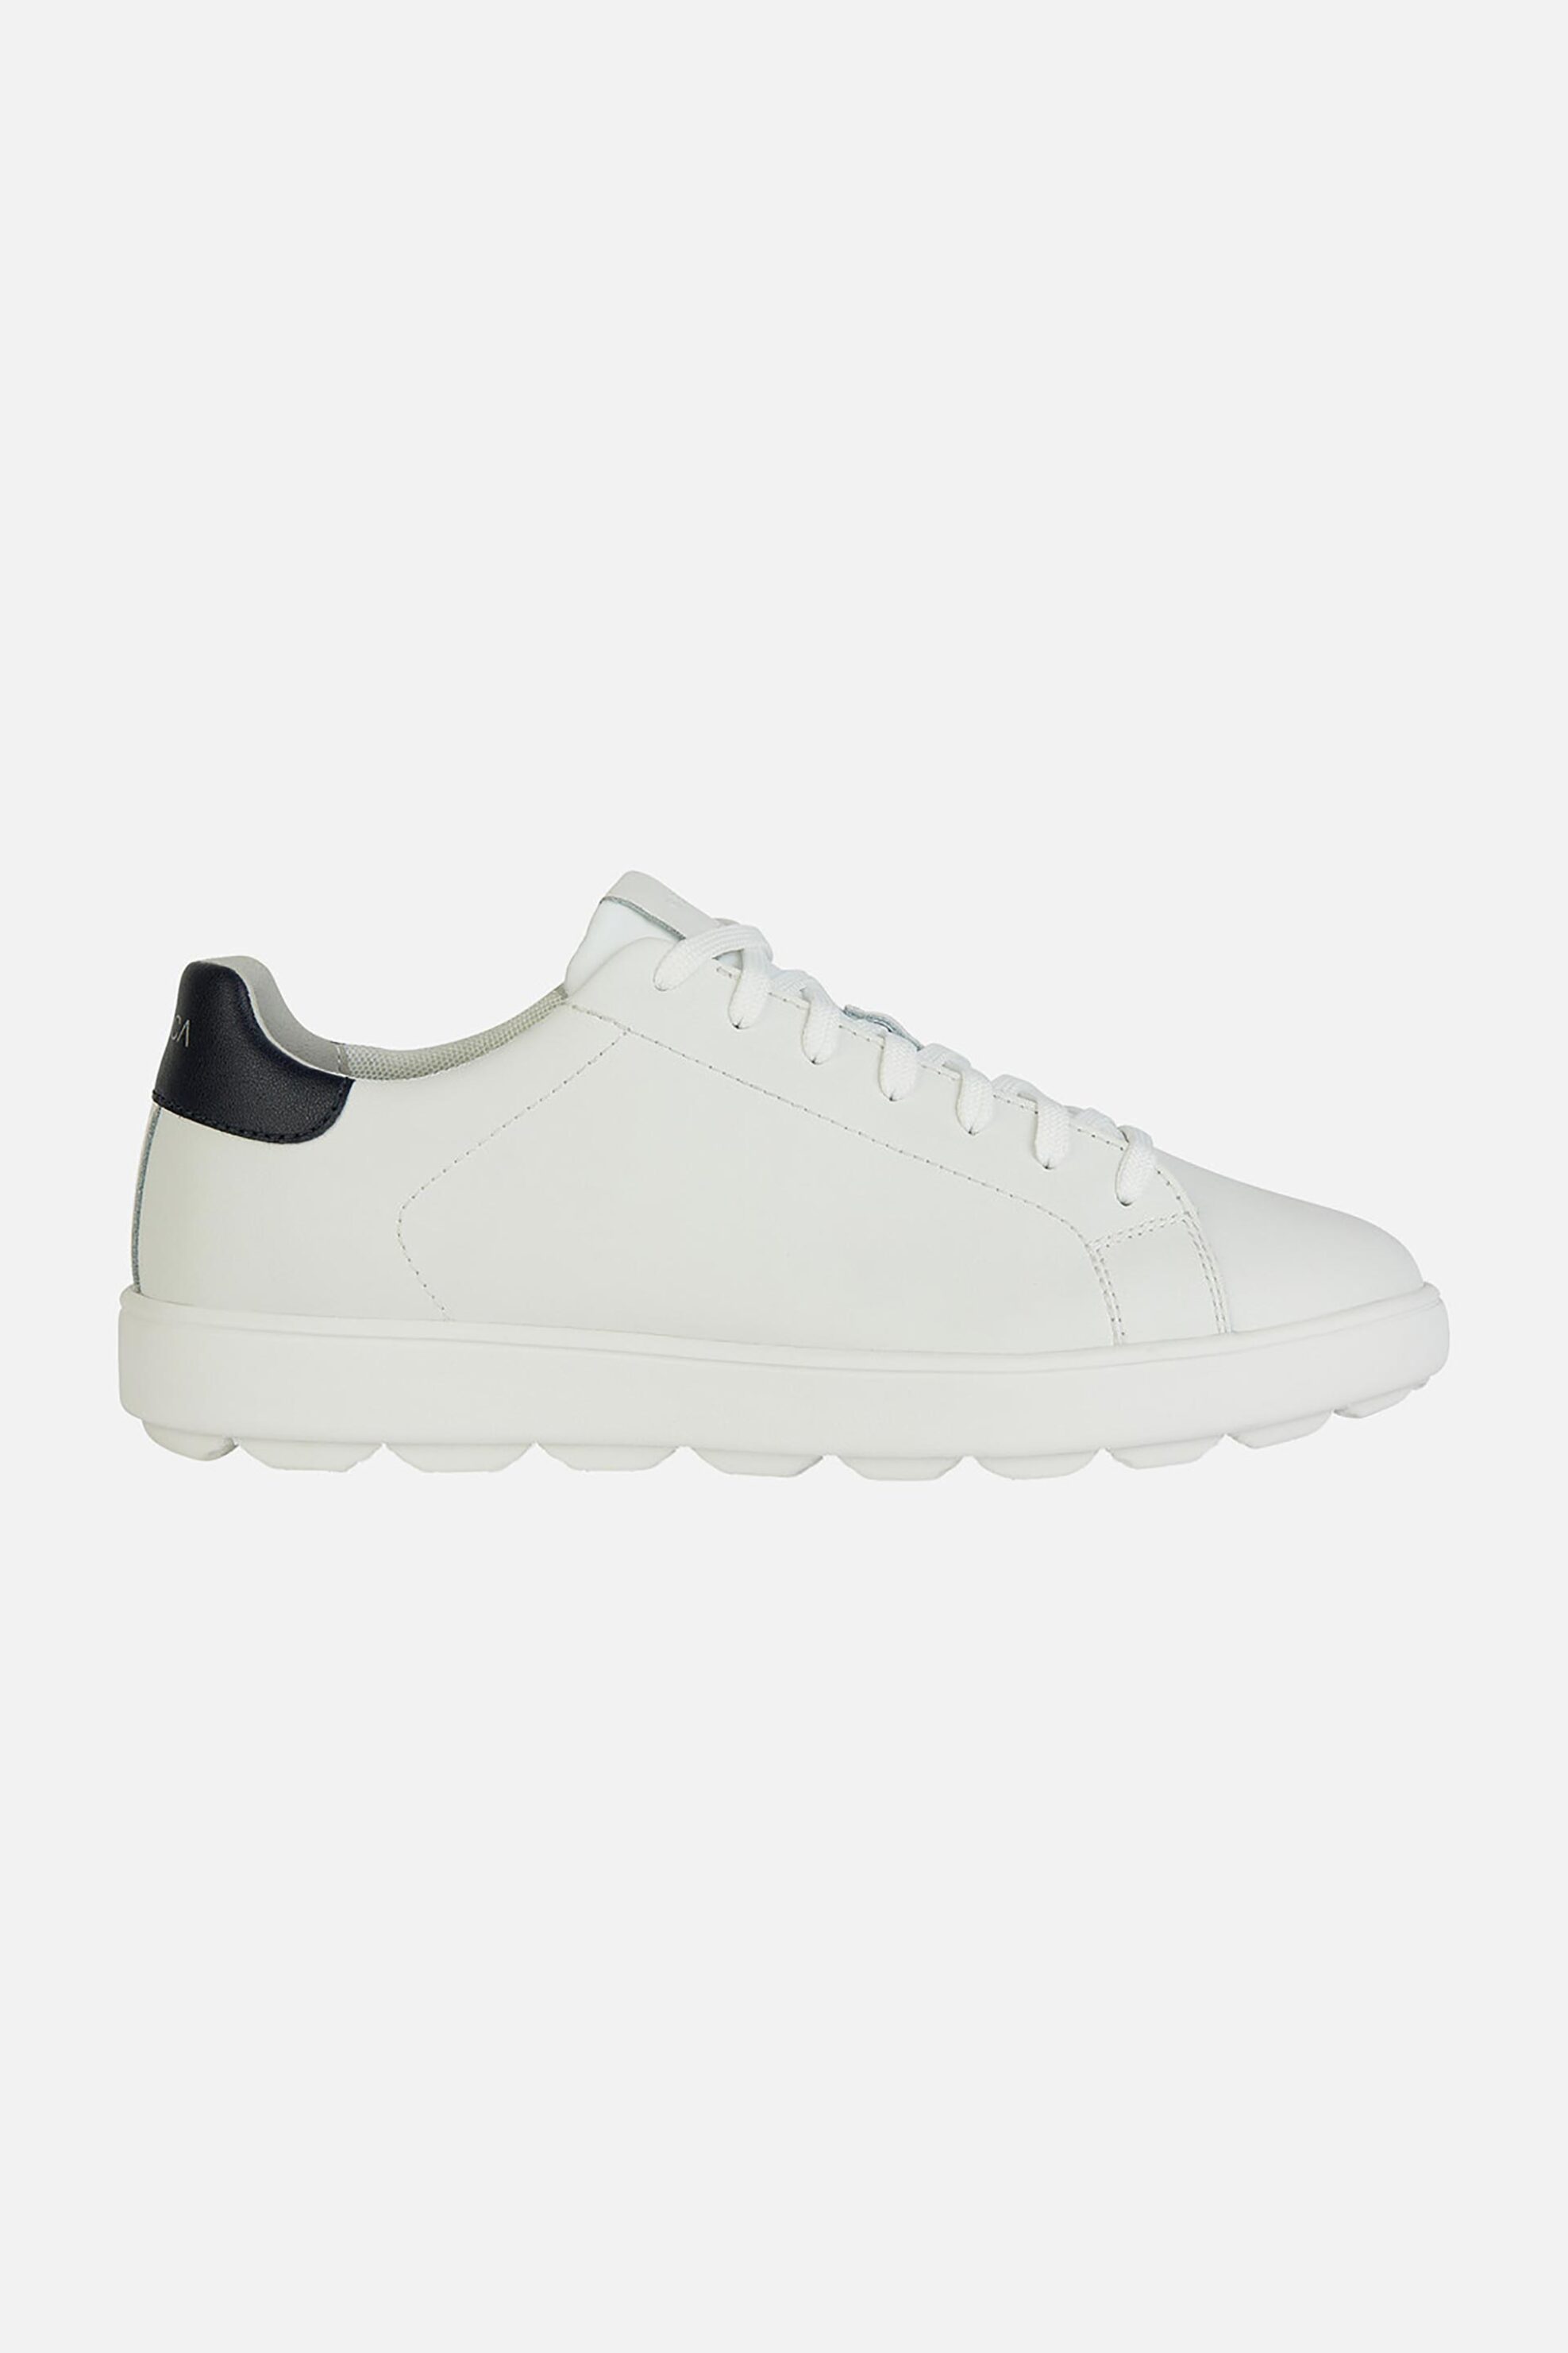 Ανδρική Μόδα > Ανδρικά Παπούτσια > Ανδρικά Sneakers Geox ανδρικά sneakers "Spherica Ecub-1" - U45GPA0009BC0899 Λευκό